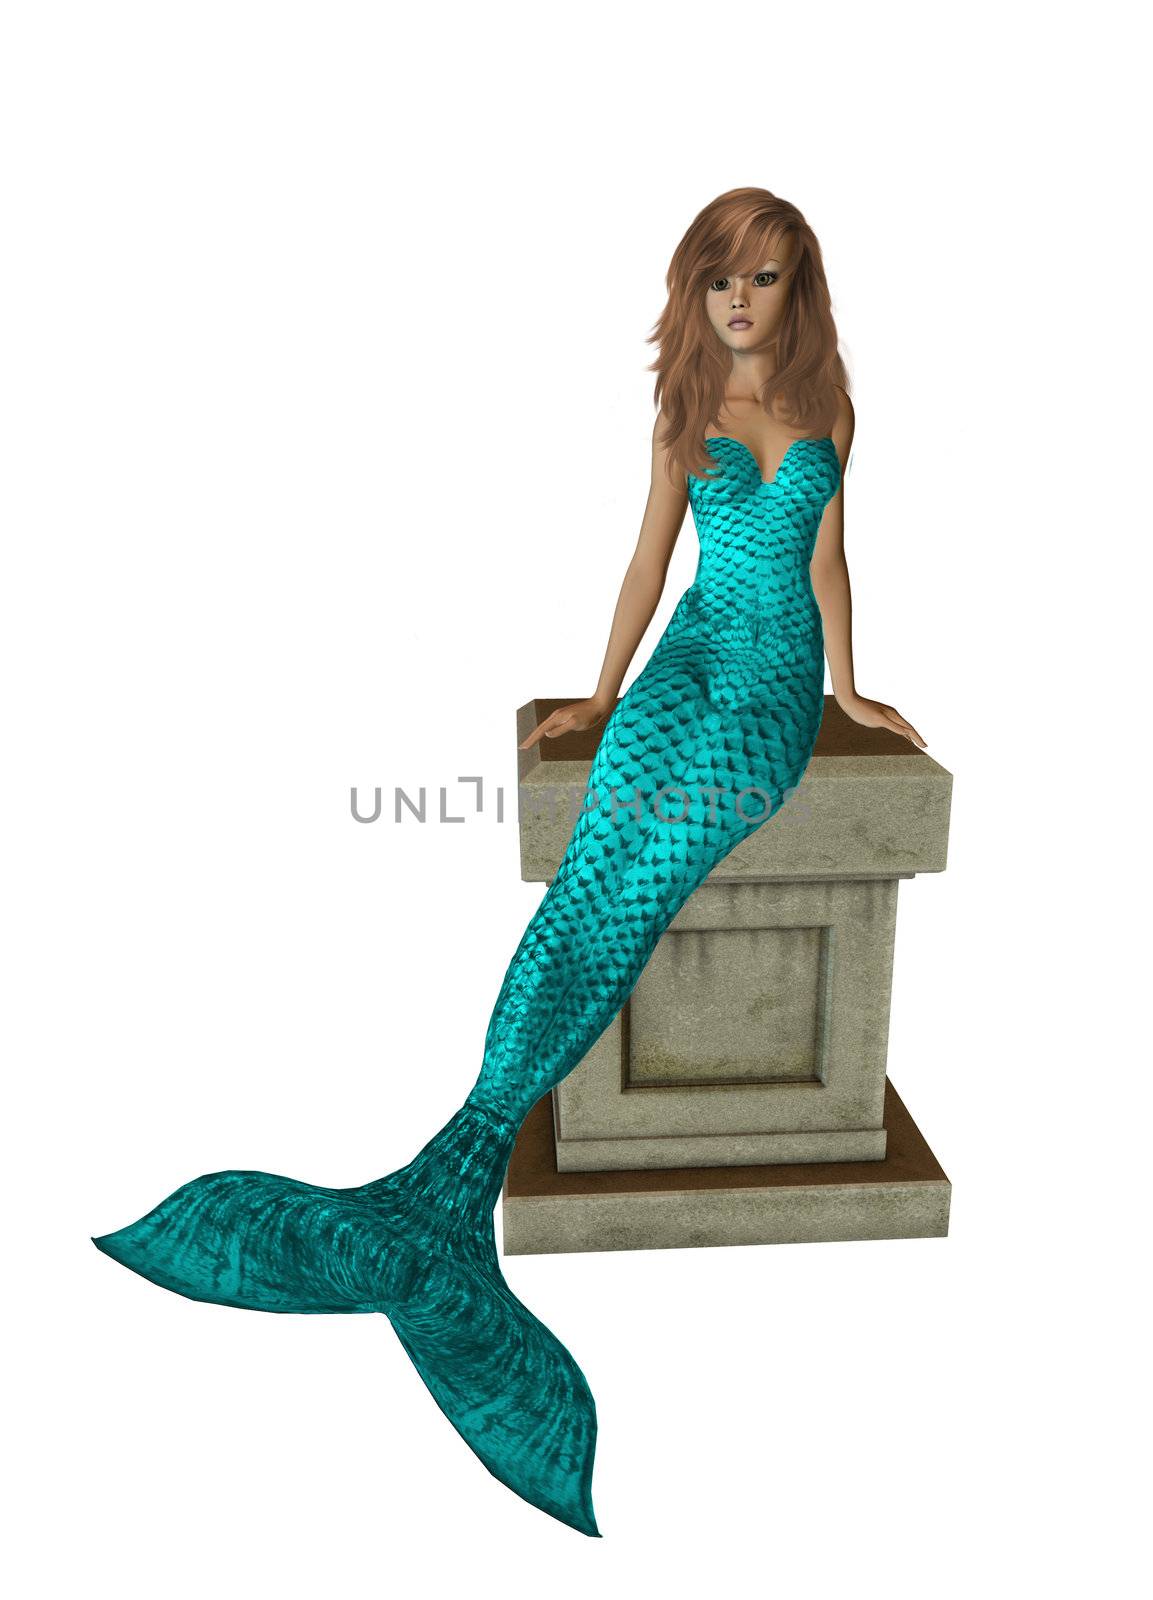 Aqua Mermaid Sitting On A Pedestal by kathygold